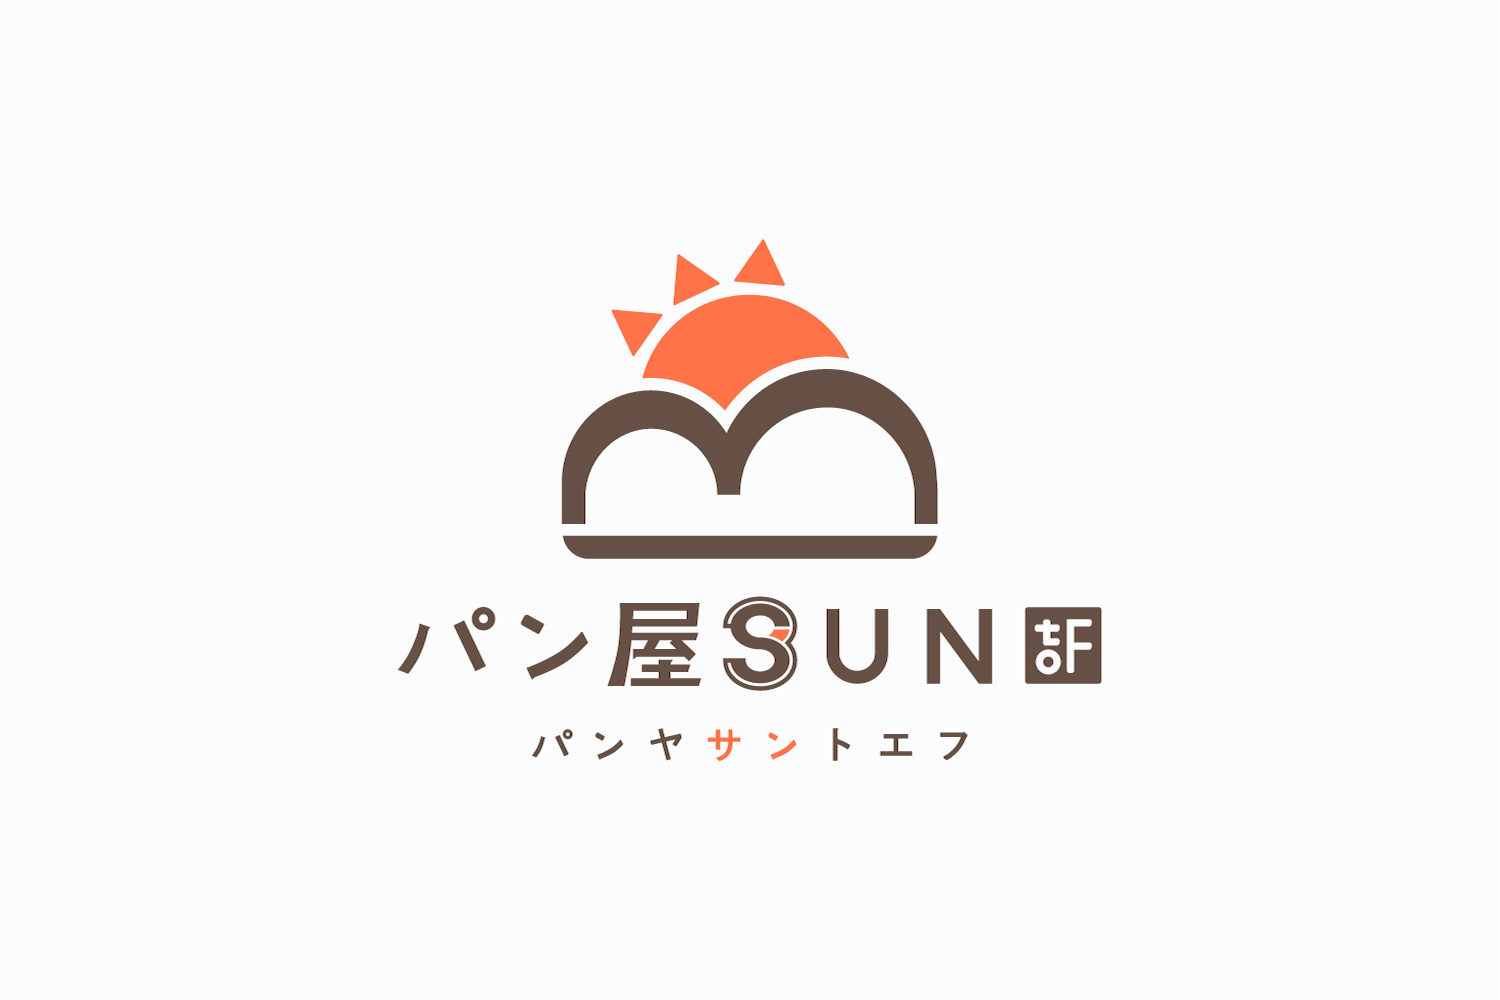 パン屋のロゴマークデザイン_愛知県 名古屋市 パン屋SUNtoF